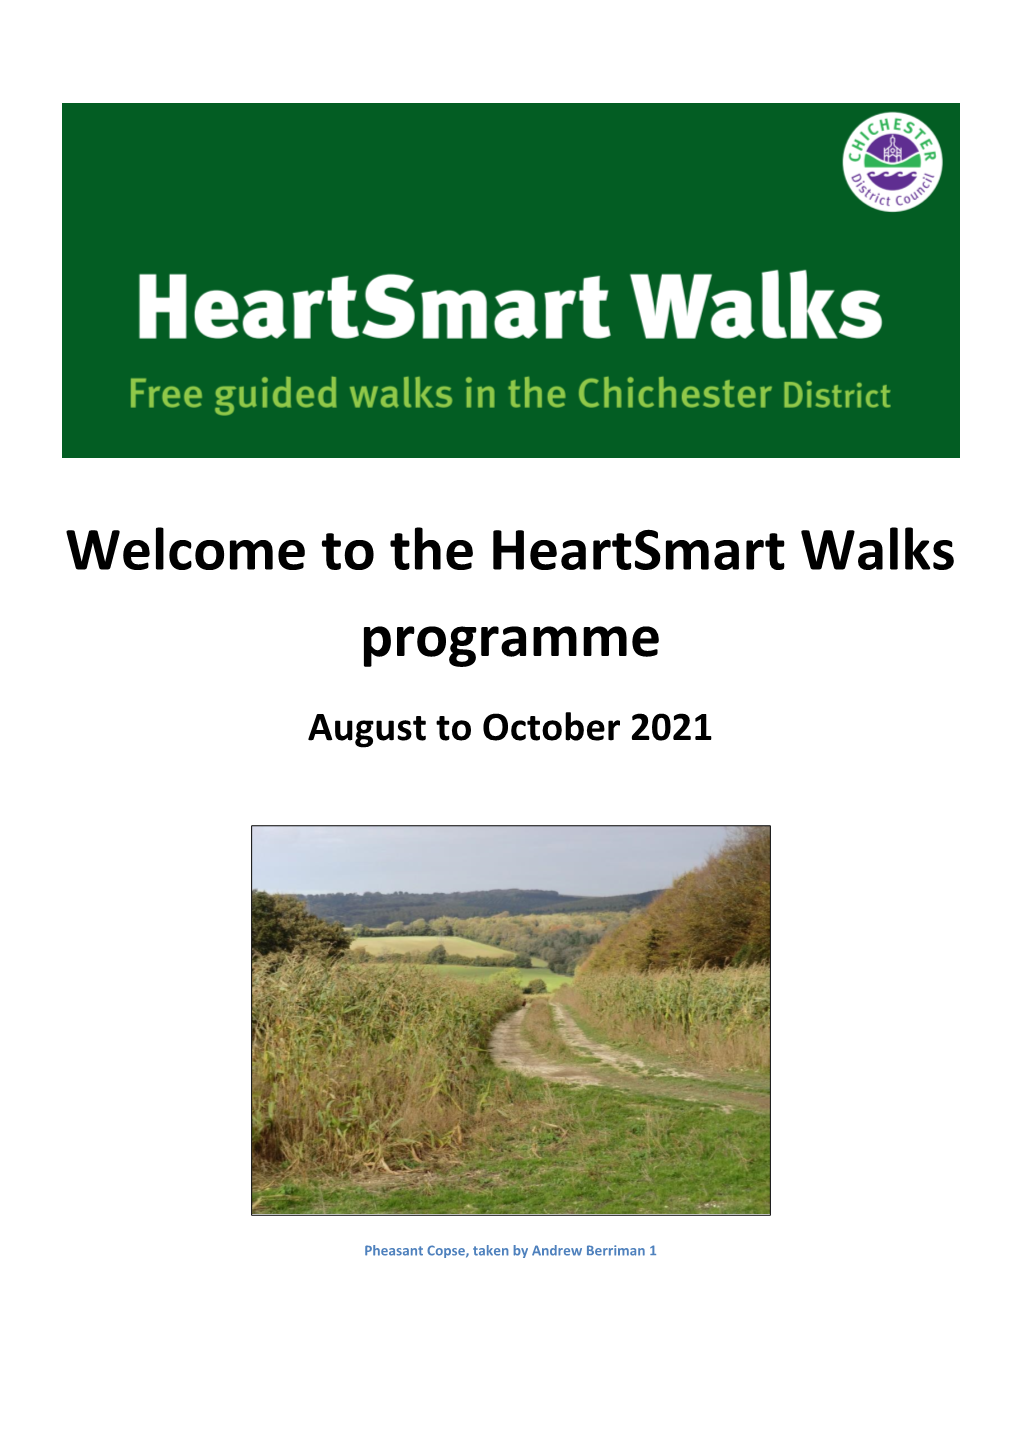 Heartsmart Walk Programme